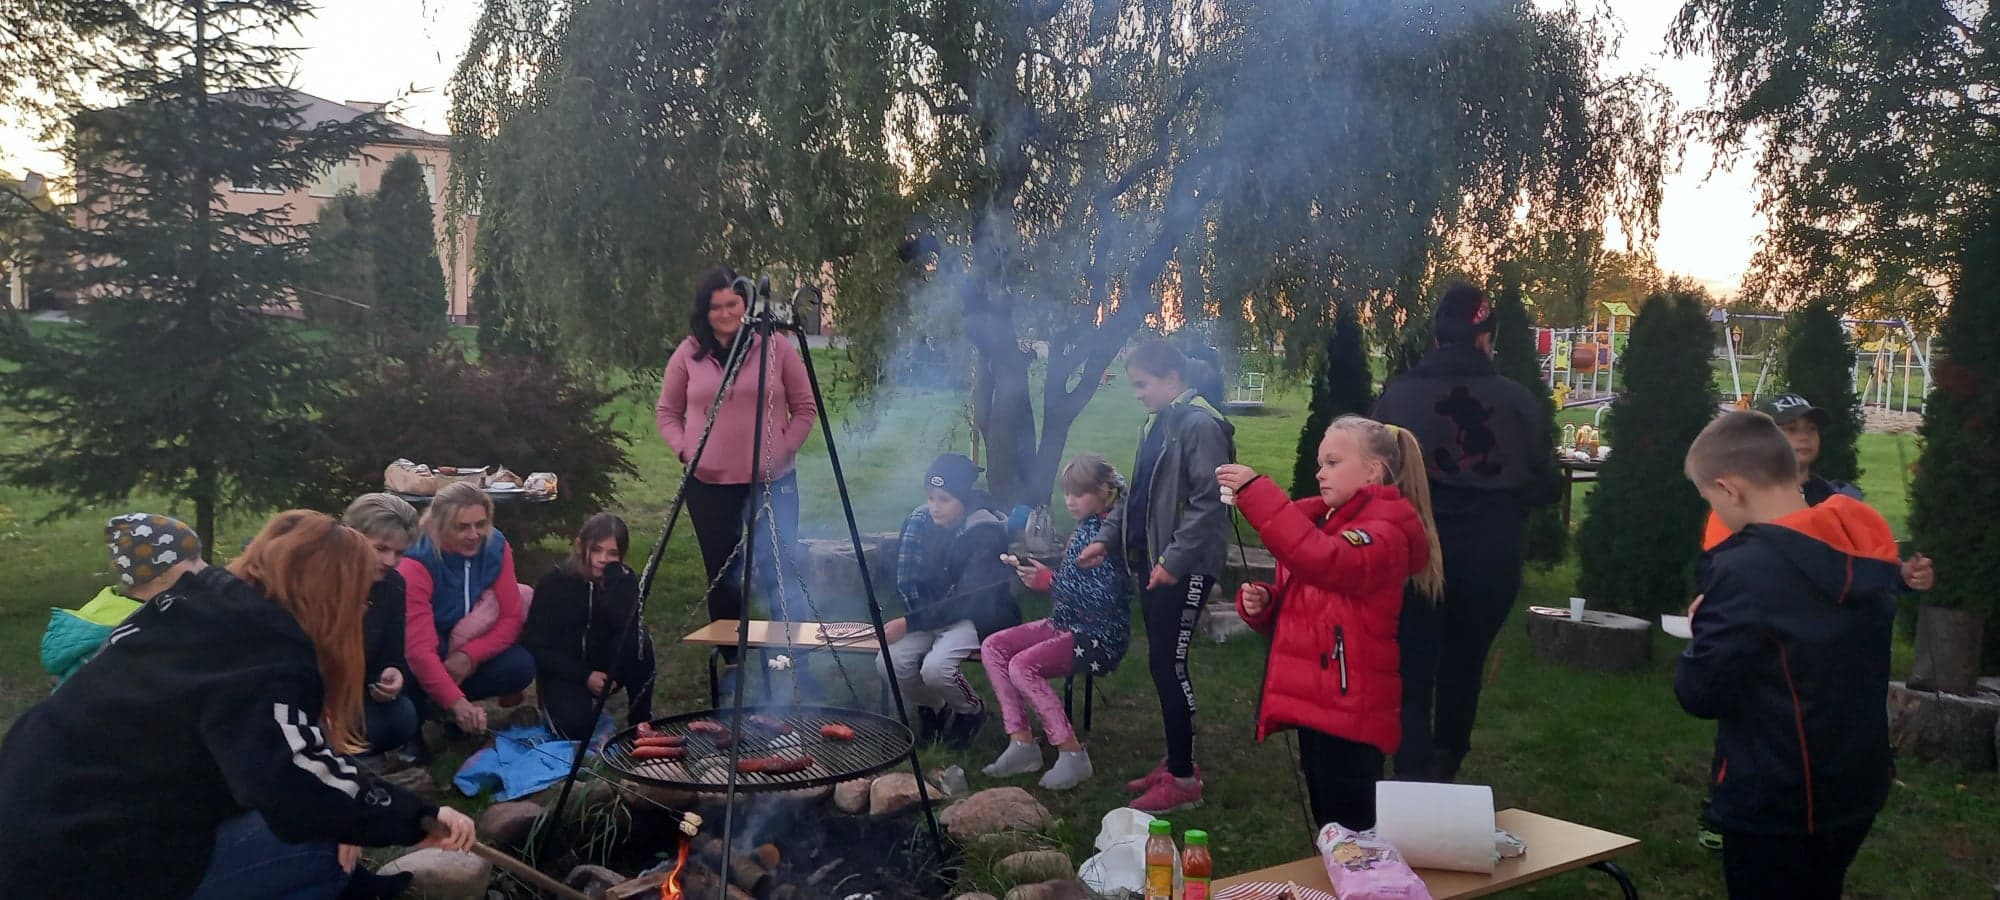 Uczniowie i rodzice przy ognisku spożywają posiłek